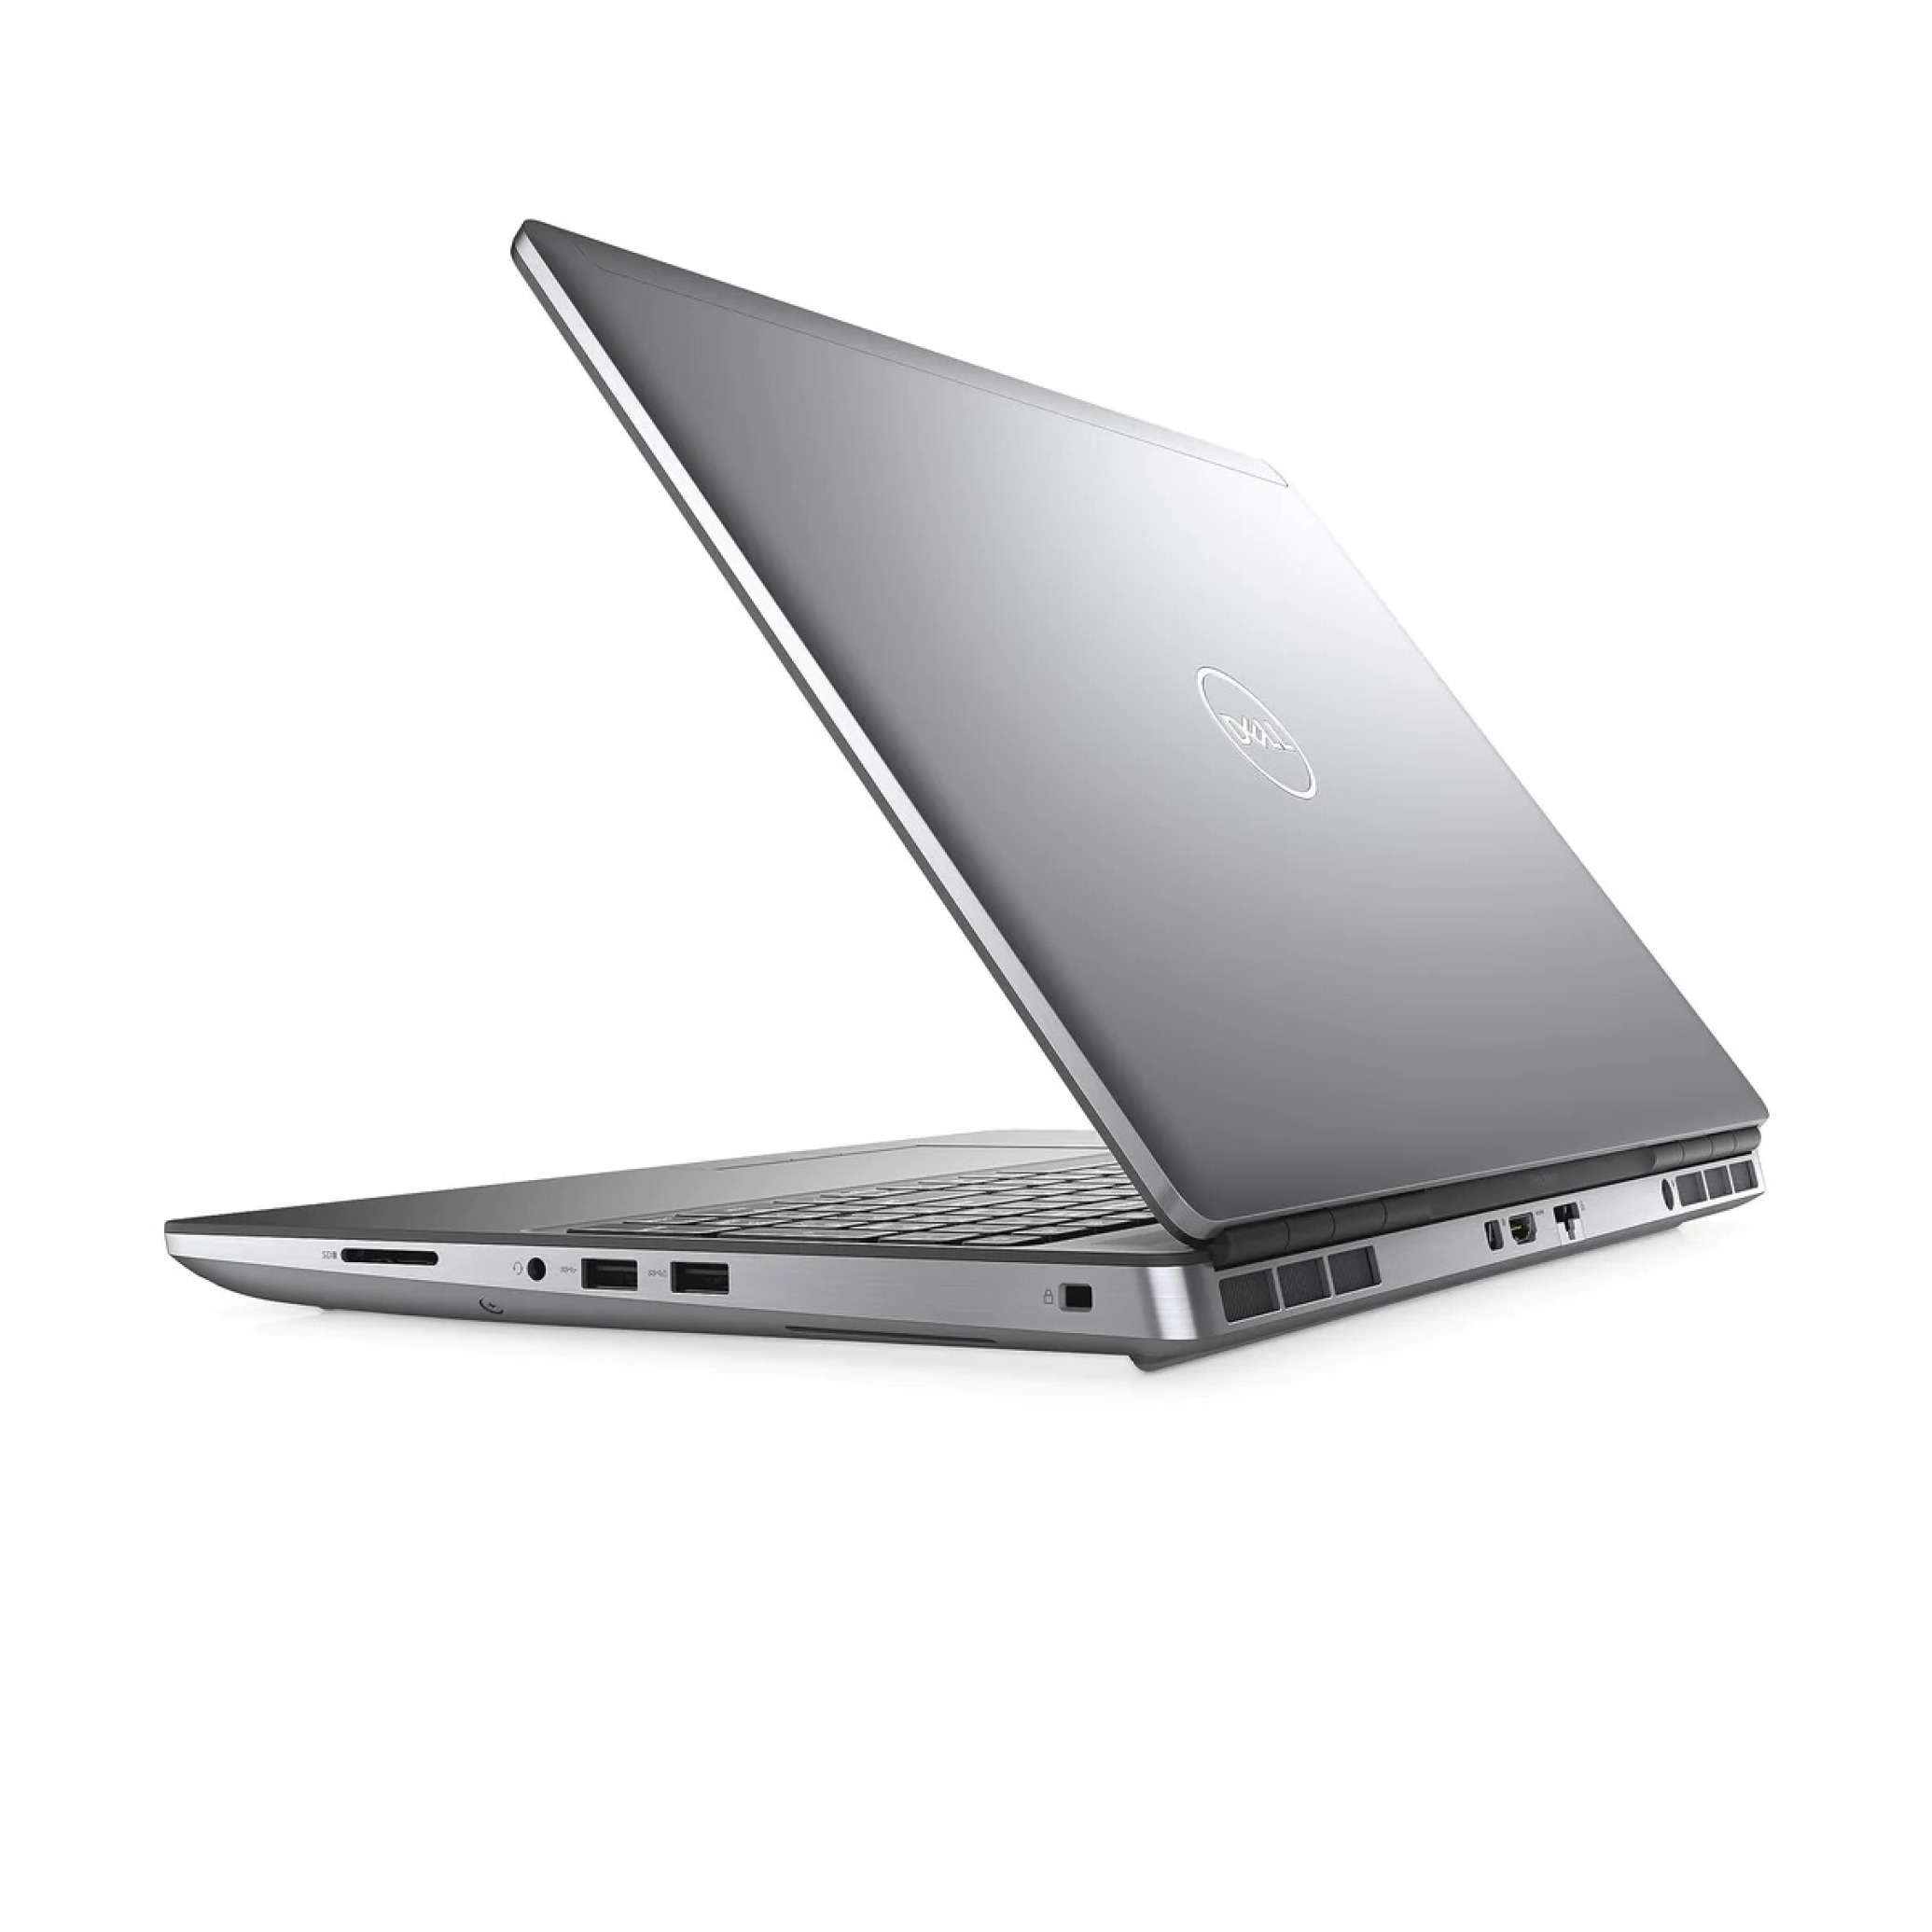  لپ تاپ 15.6 اینچی DELL مدل Precision 7550 پردازنده زئون گرافیک Quadro T2000 4GB | لاکچری لپتاپ 